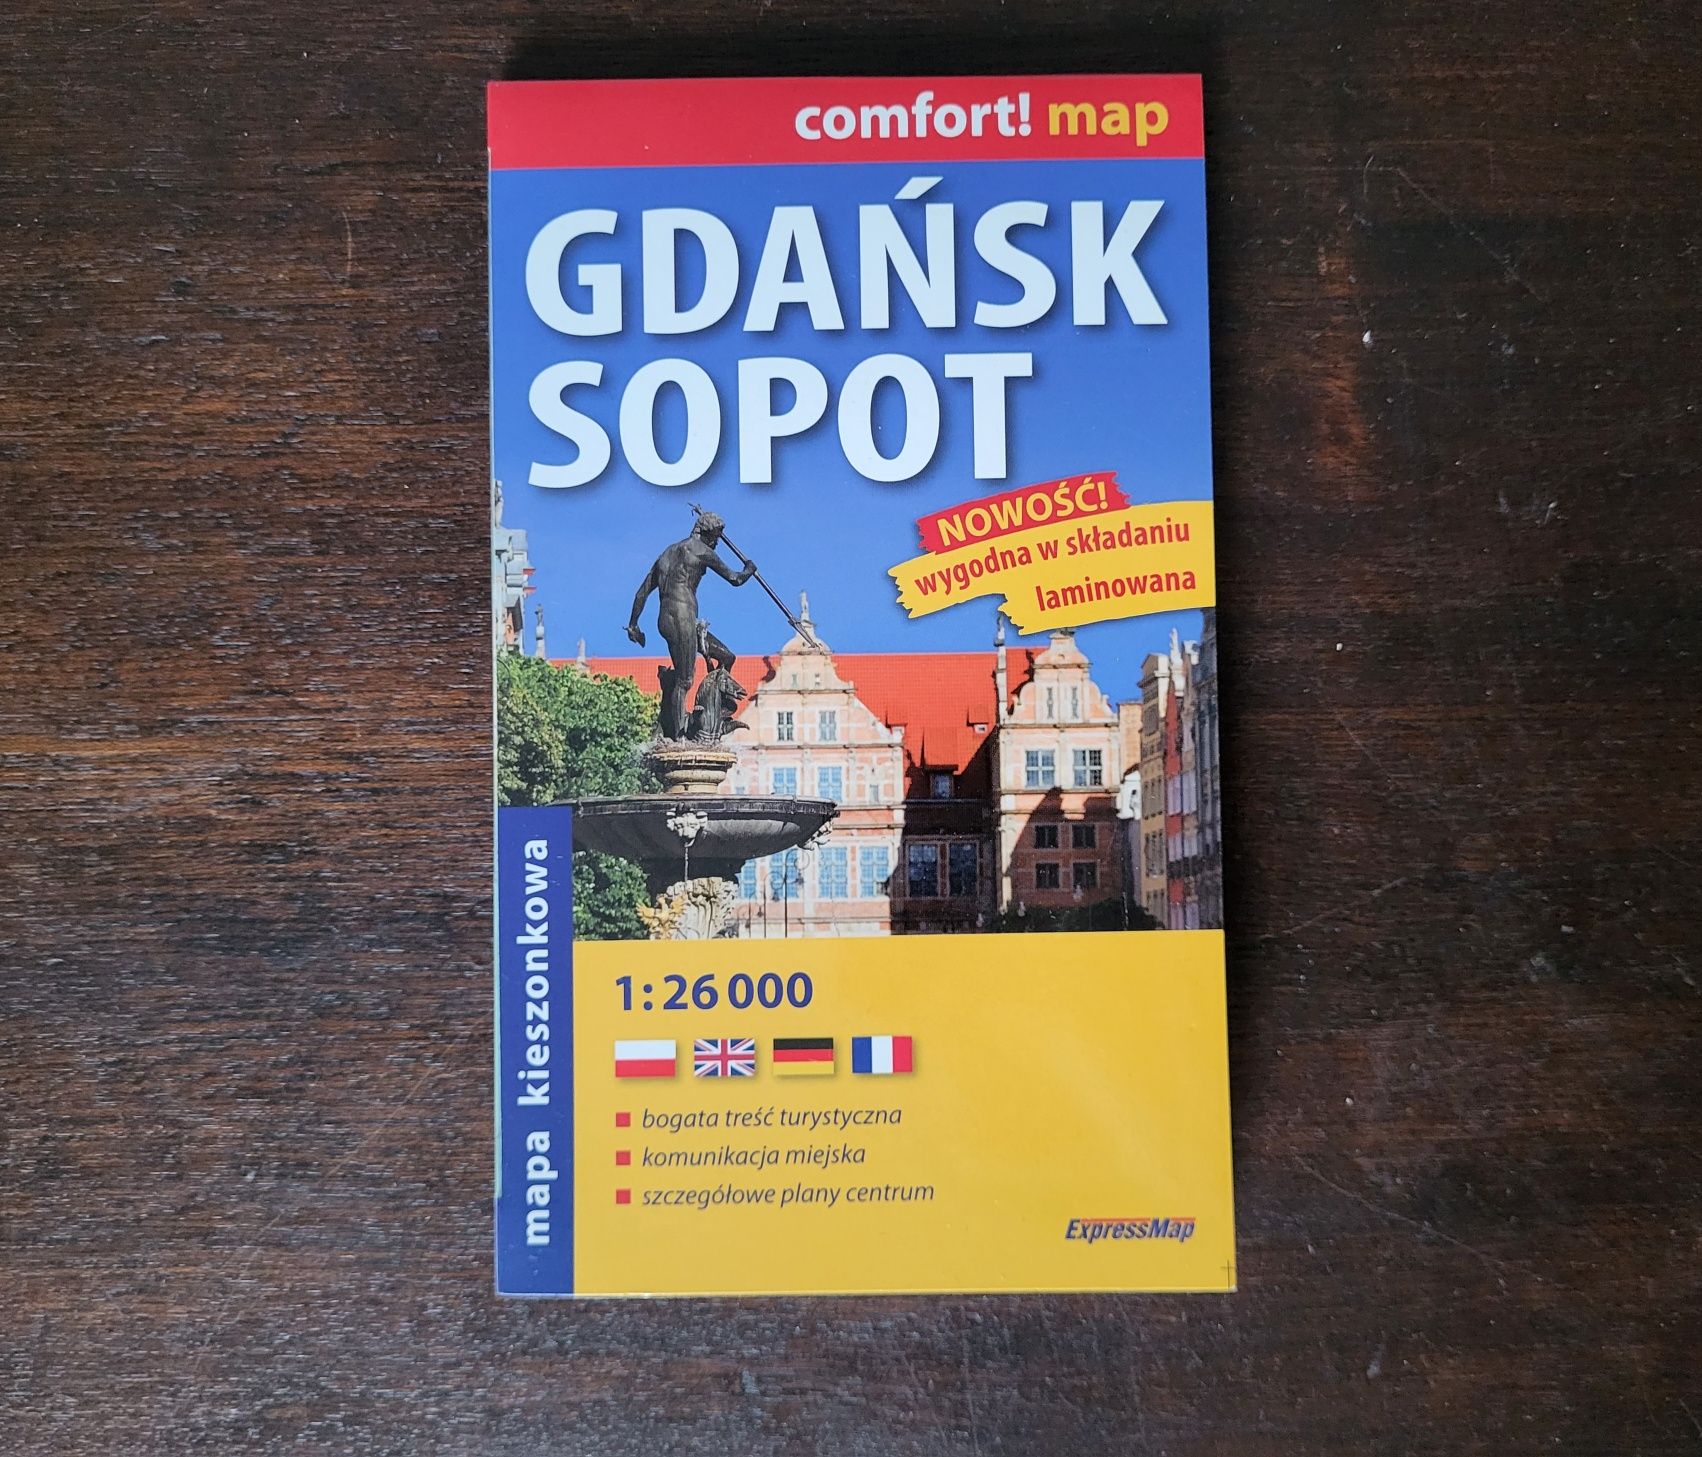 Mapa kieszonkowa laminowana Gdańsk Sopot Comfort Map. Stan idealny